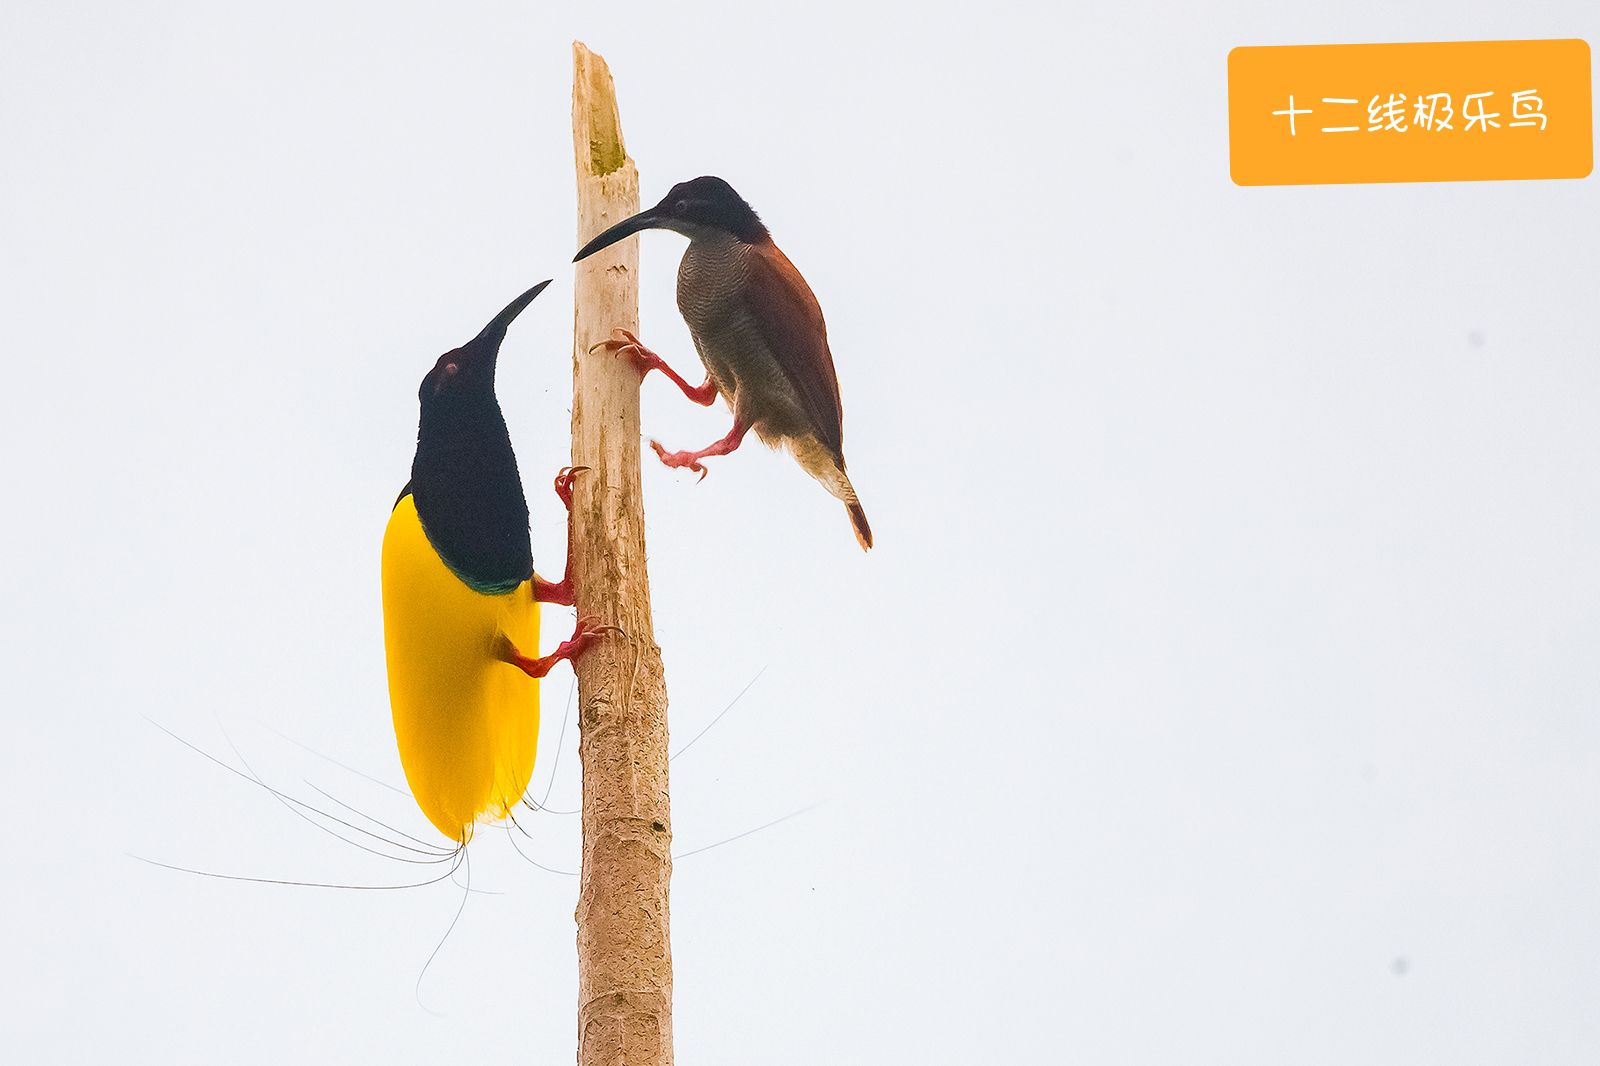 极乐鸟是全世界最为奇特的鸟，主要生活在巴布亚岛。12线极乐鸟尾部有12根线，公鸟在跳求偶舞时，舞动1